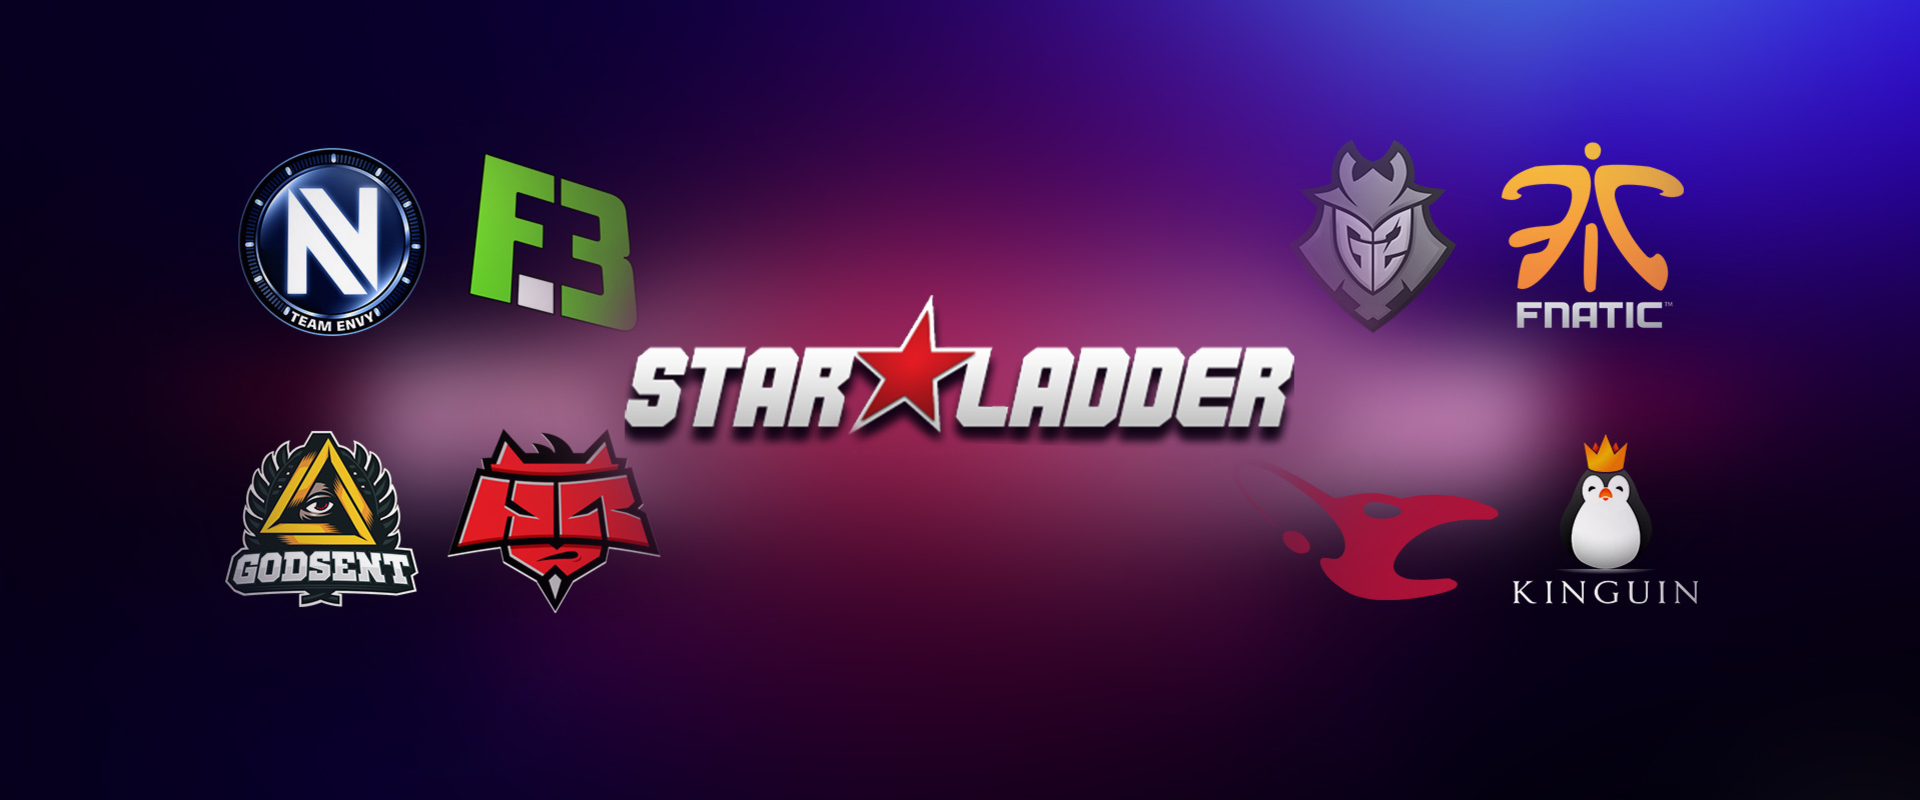 DeadFox és a HellRaisers meghívást kapott a StarLadder versenyére!